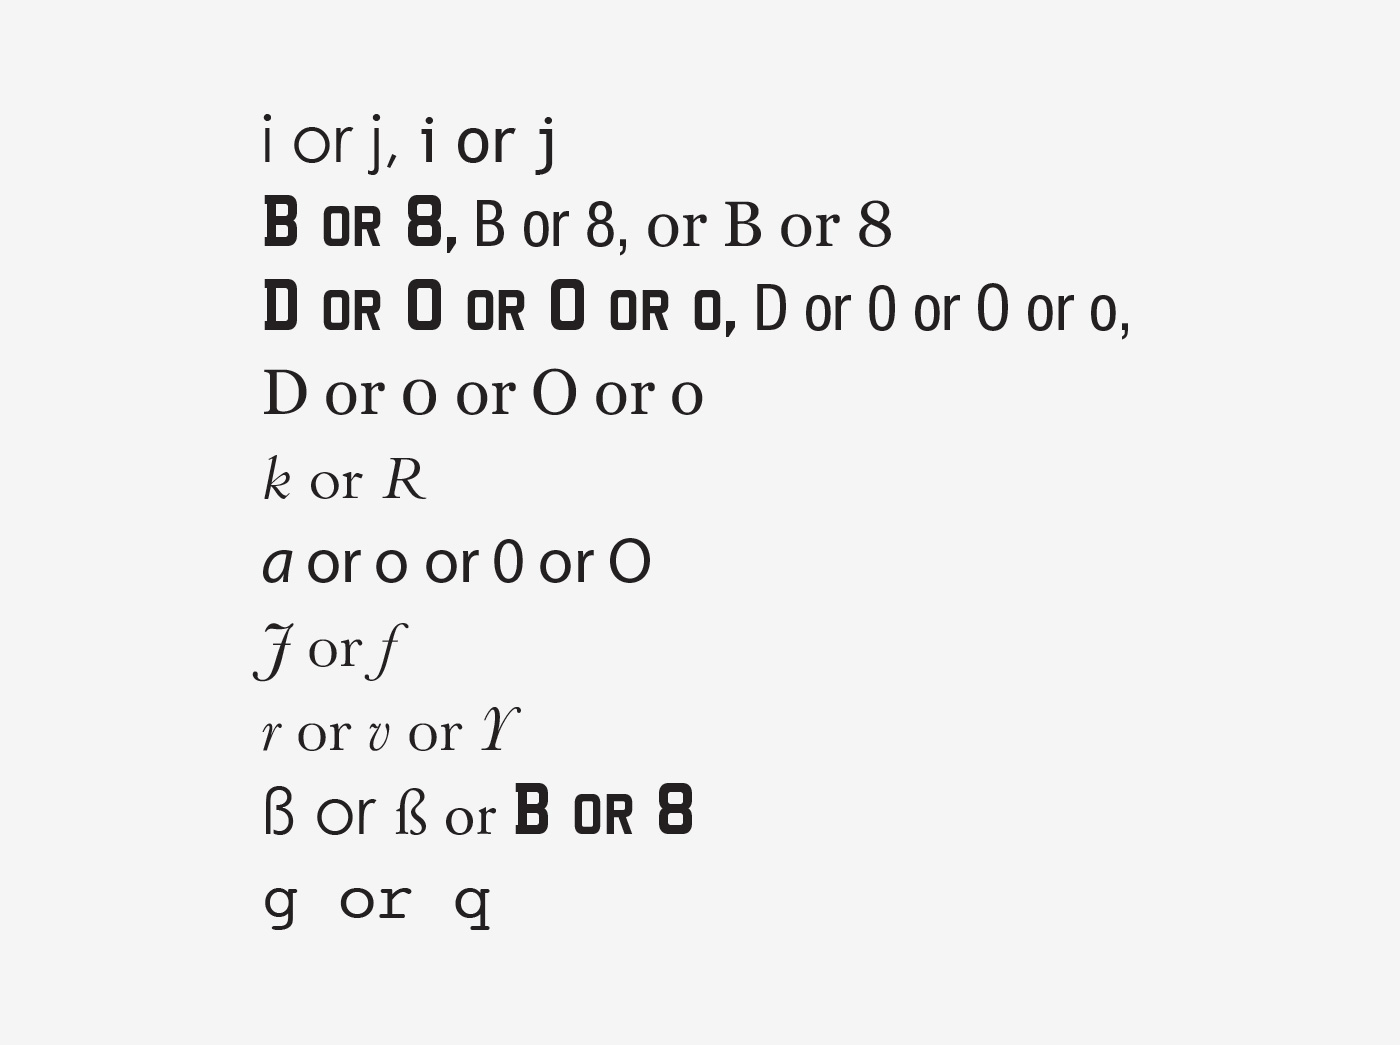 Figure3-from-TypographyGuru-website-paper.jpg